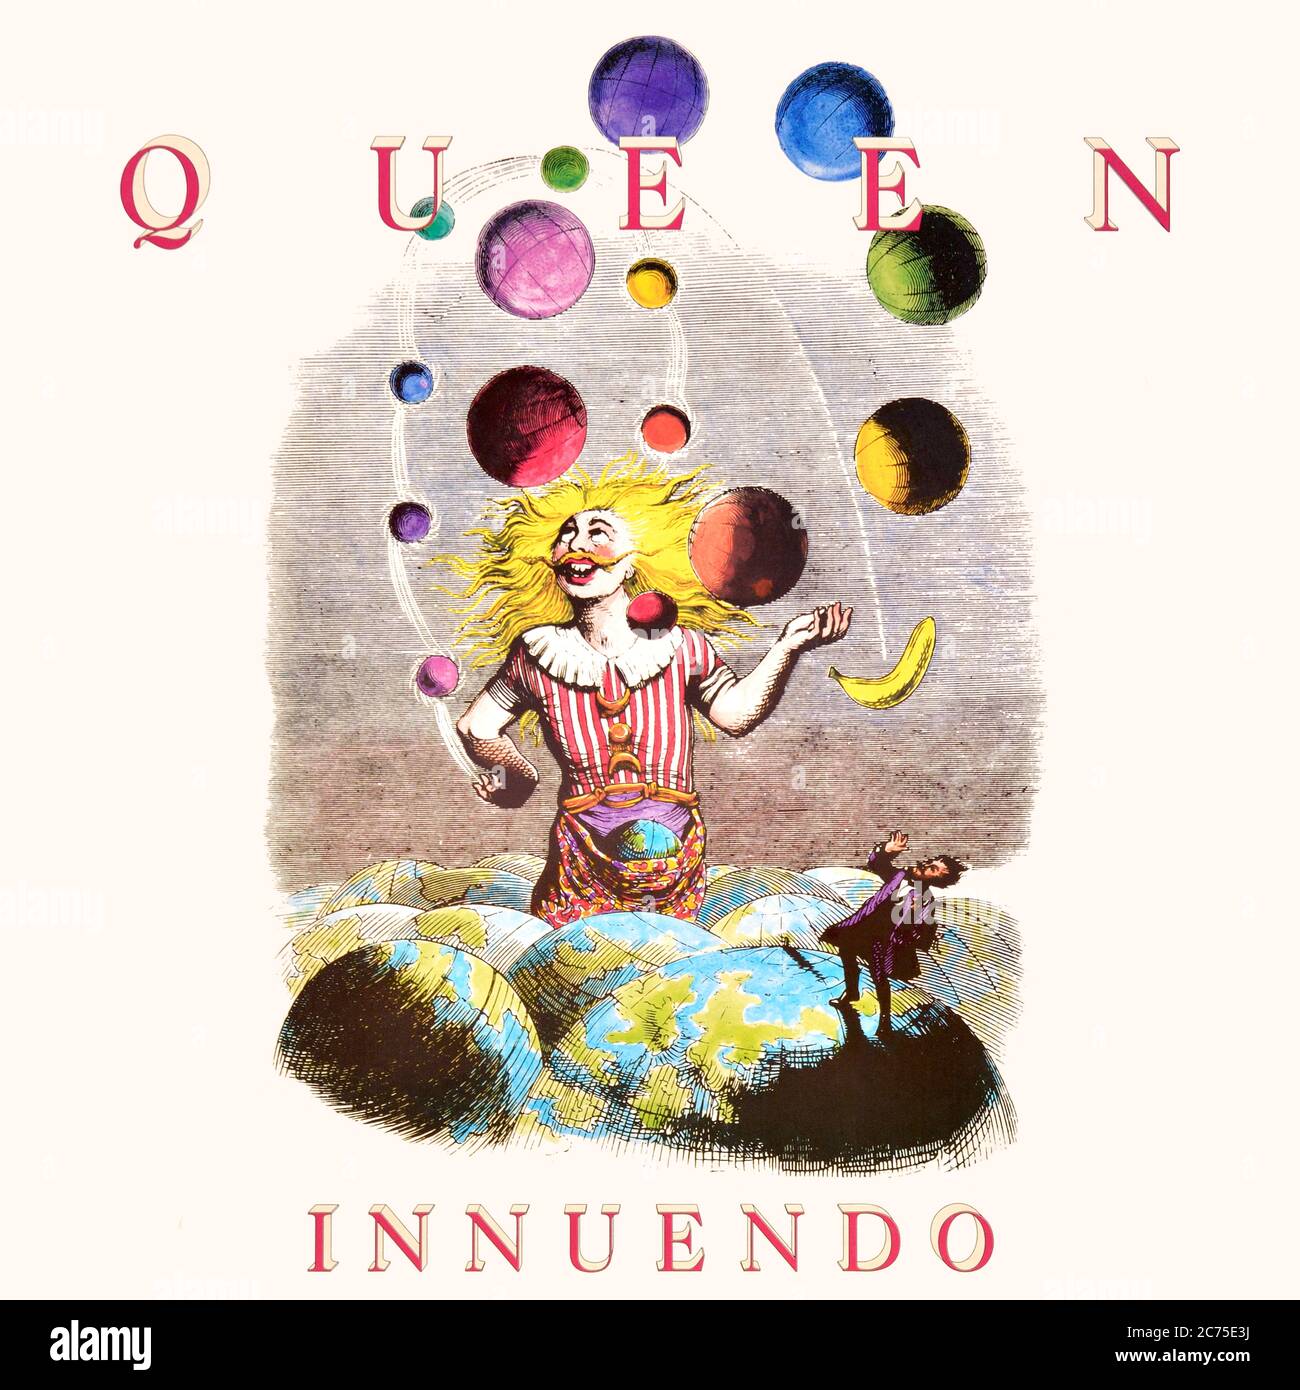 Queen - original vinyl album cover - Innuendo - 1991 Stock Photo